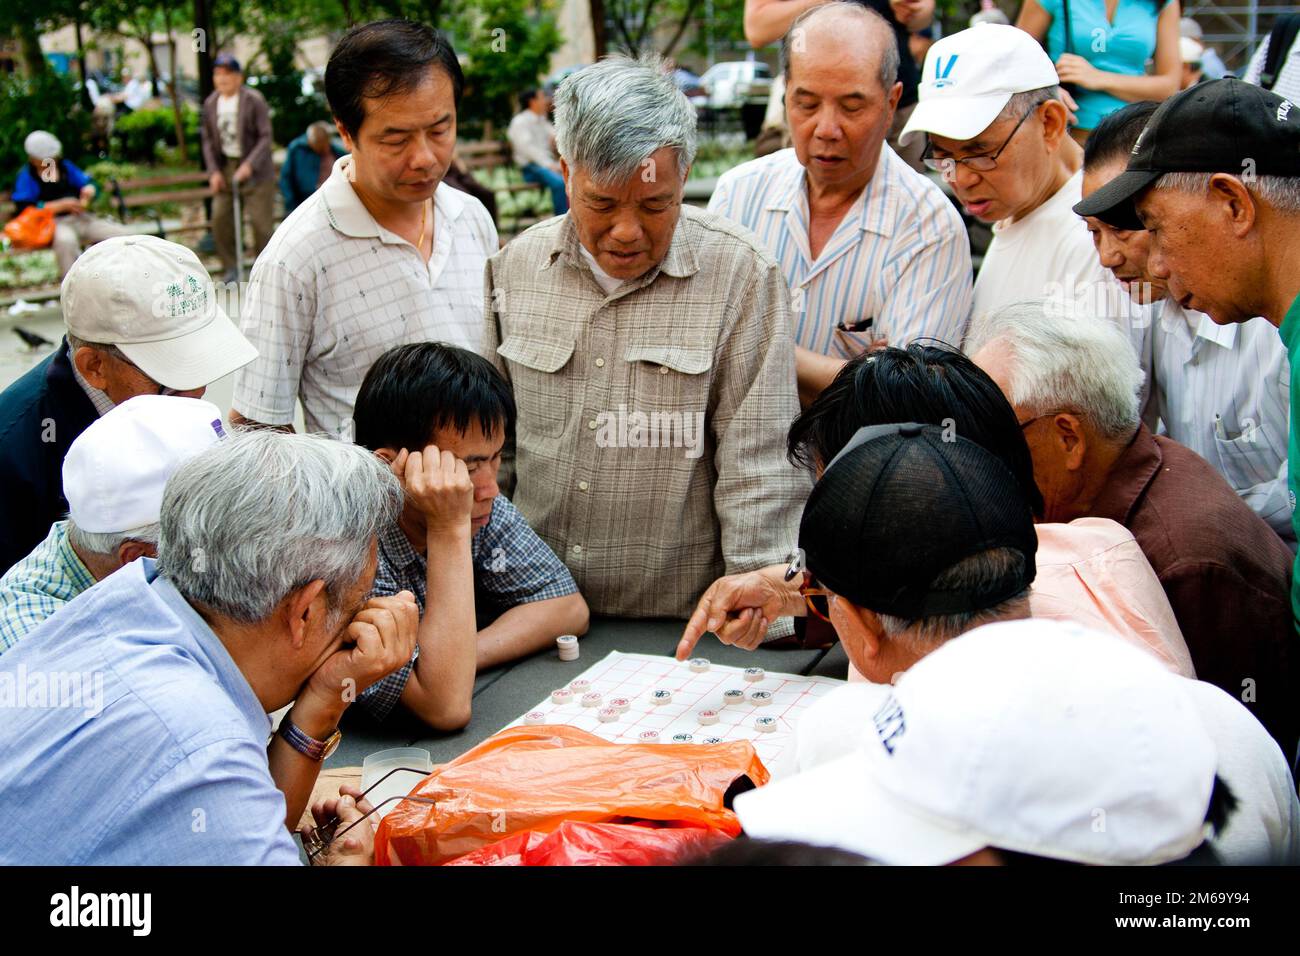 Les Asiatiques paliaient Xiangqi, jeu de société d'échecs chinois Banque D'Images